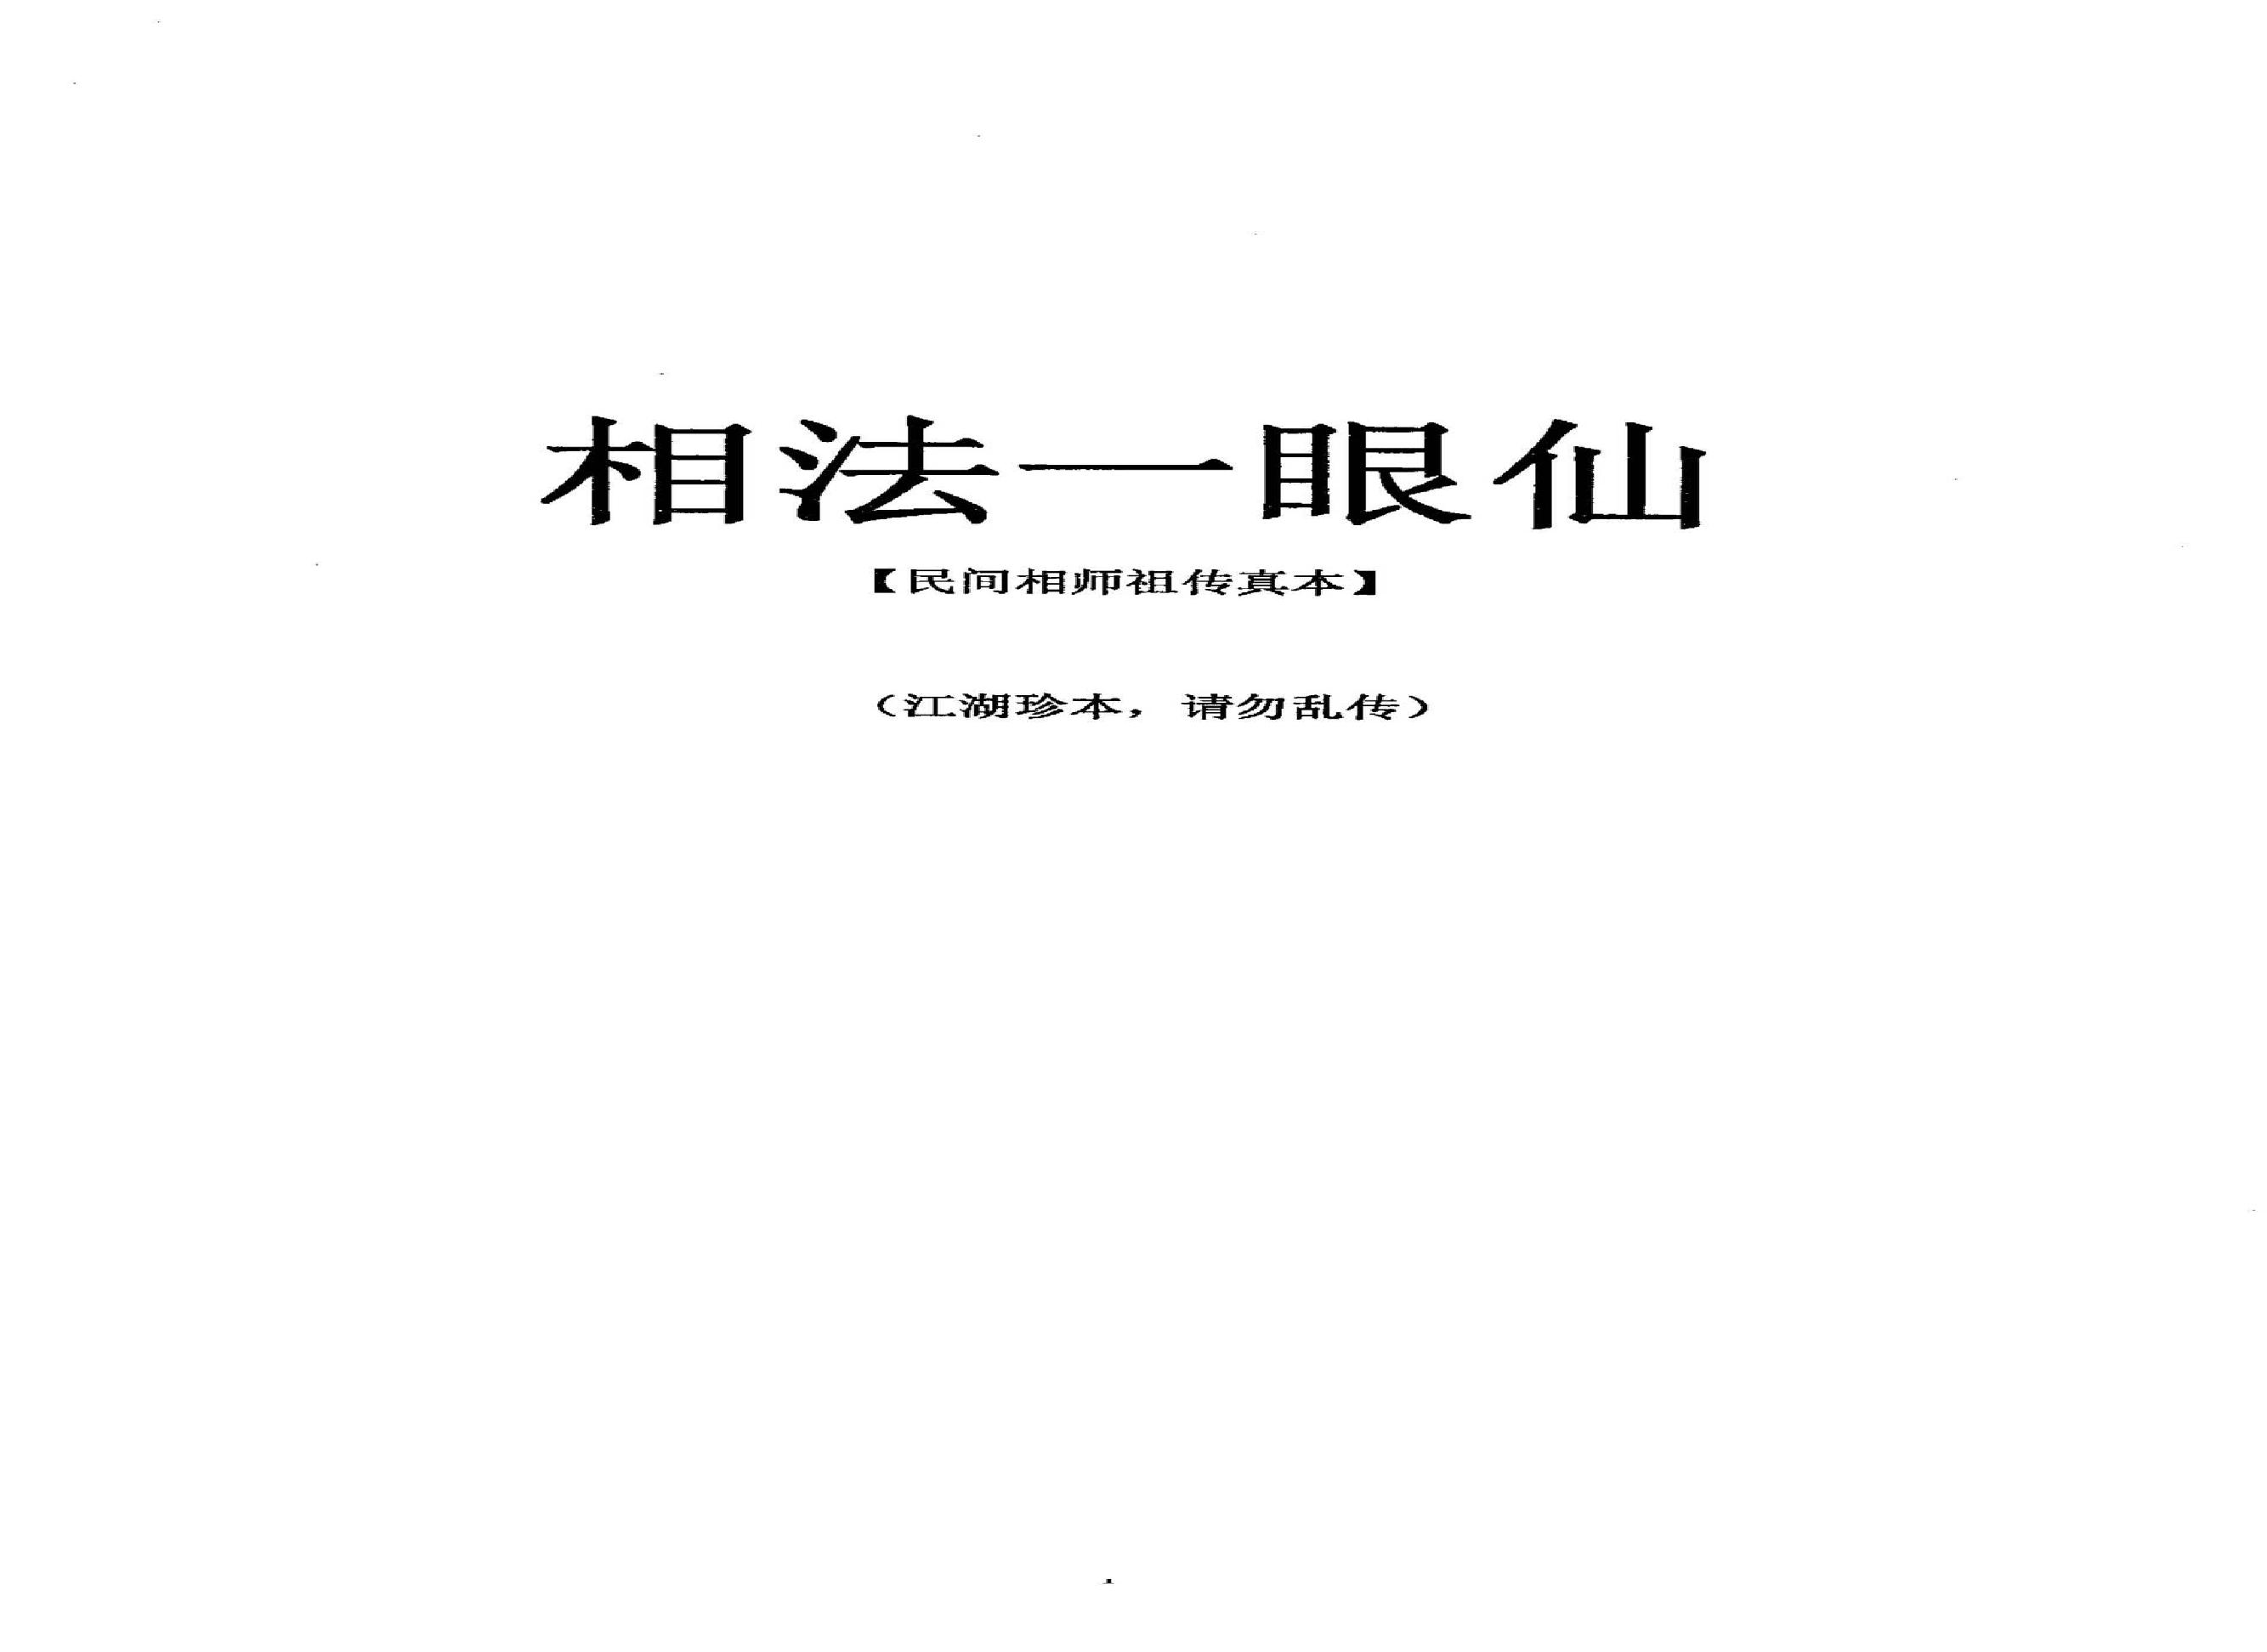 丙丁居士-相法一眼仙.pdf(2MB_7页)